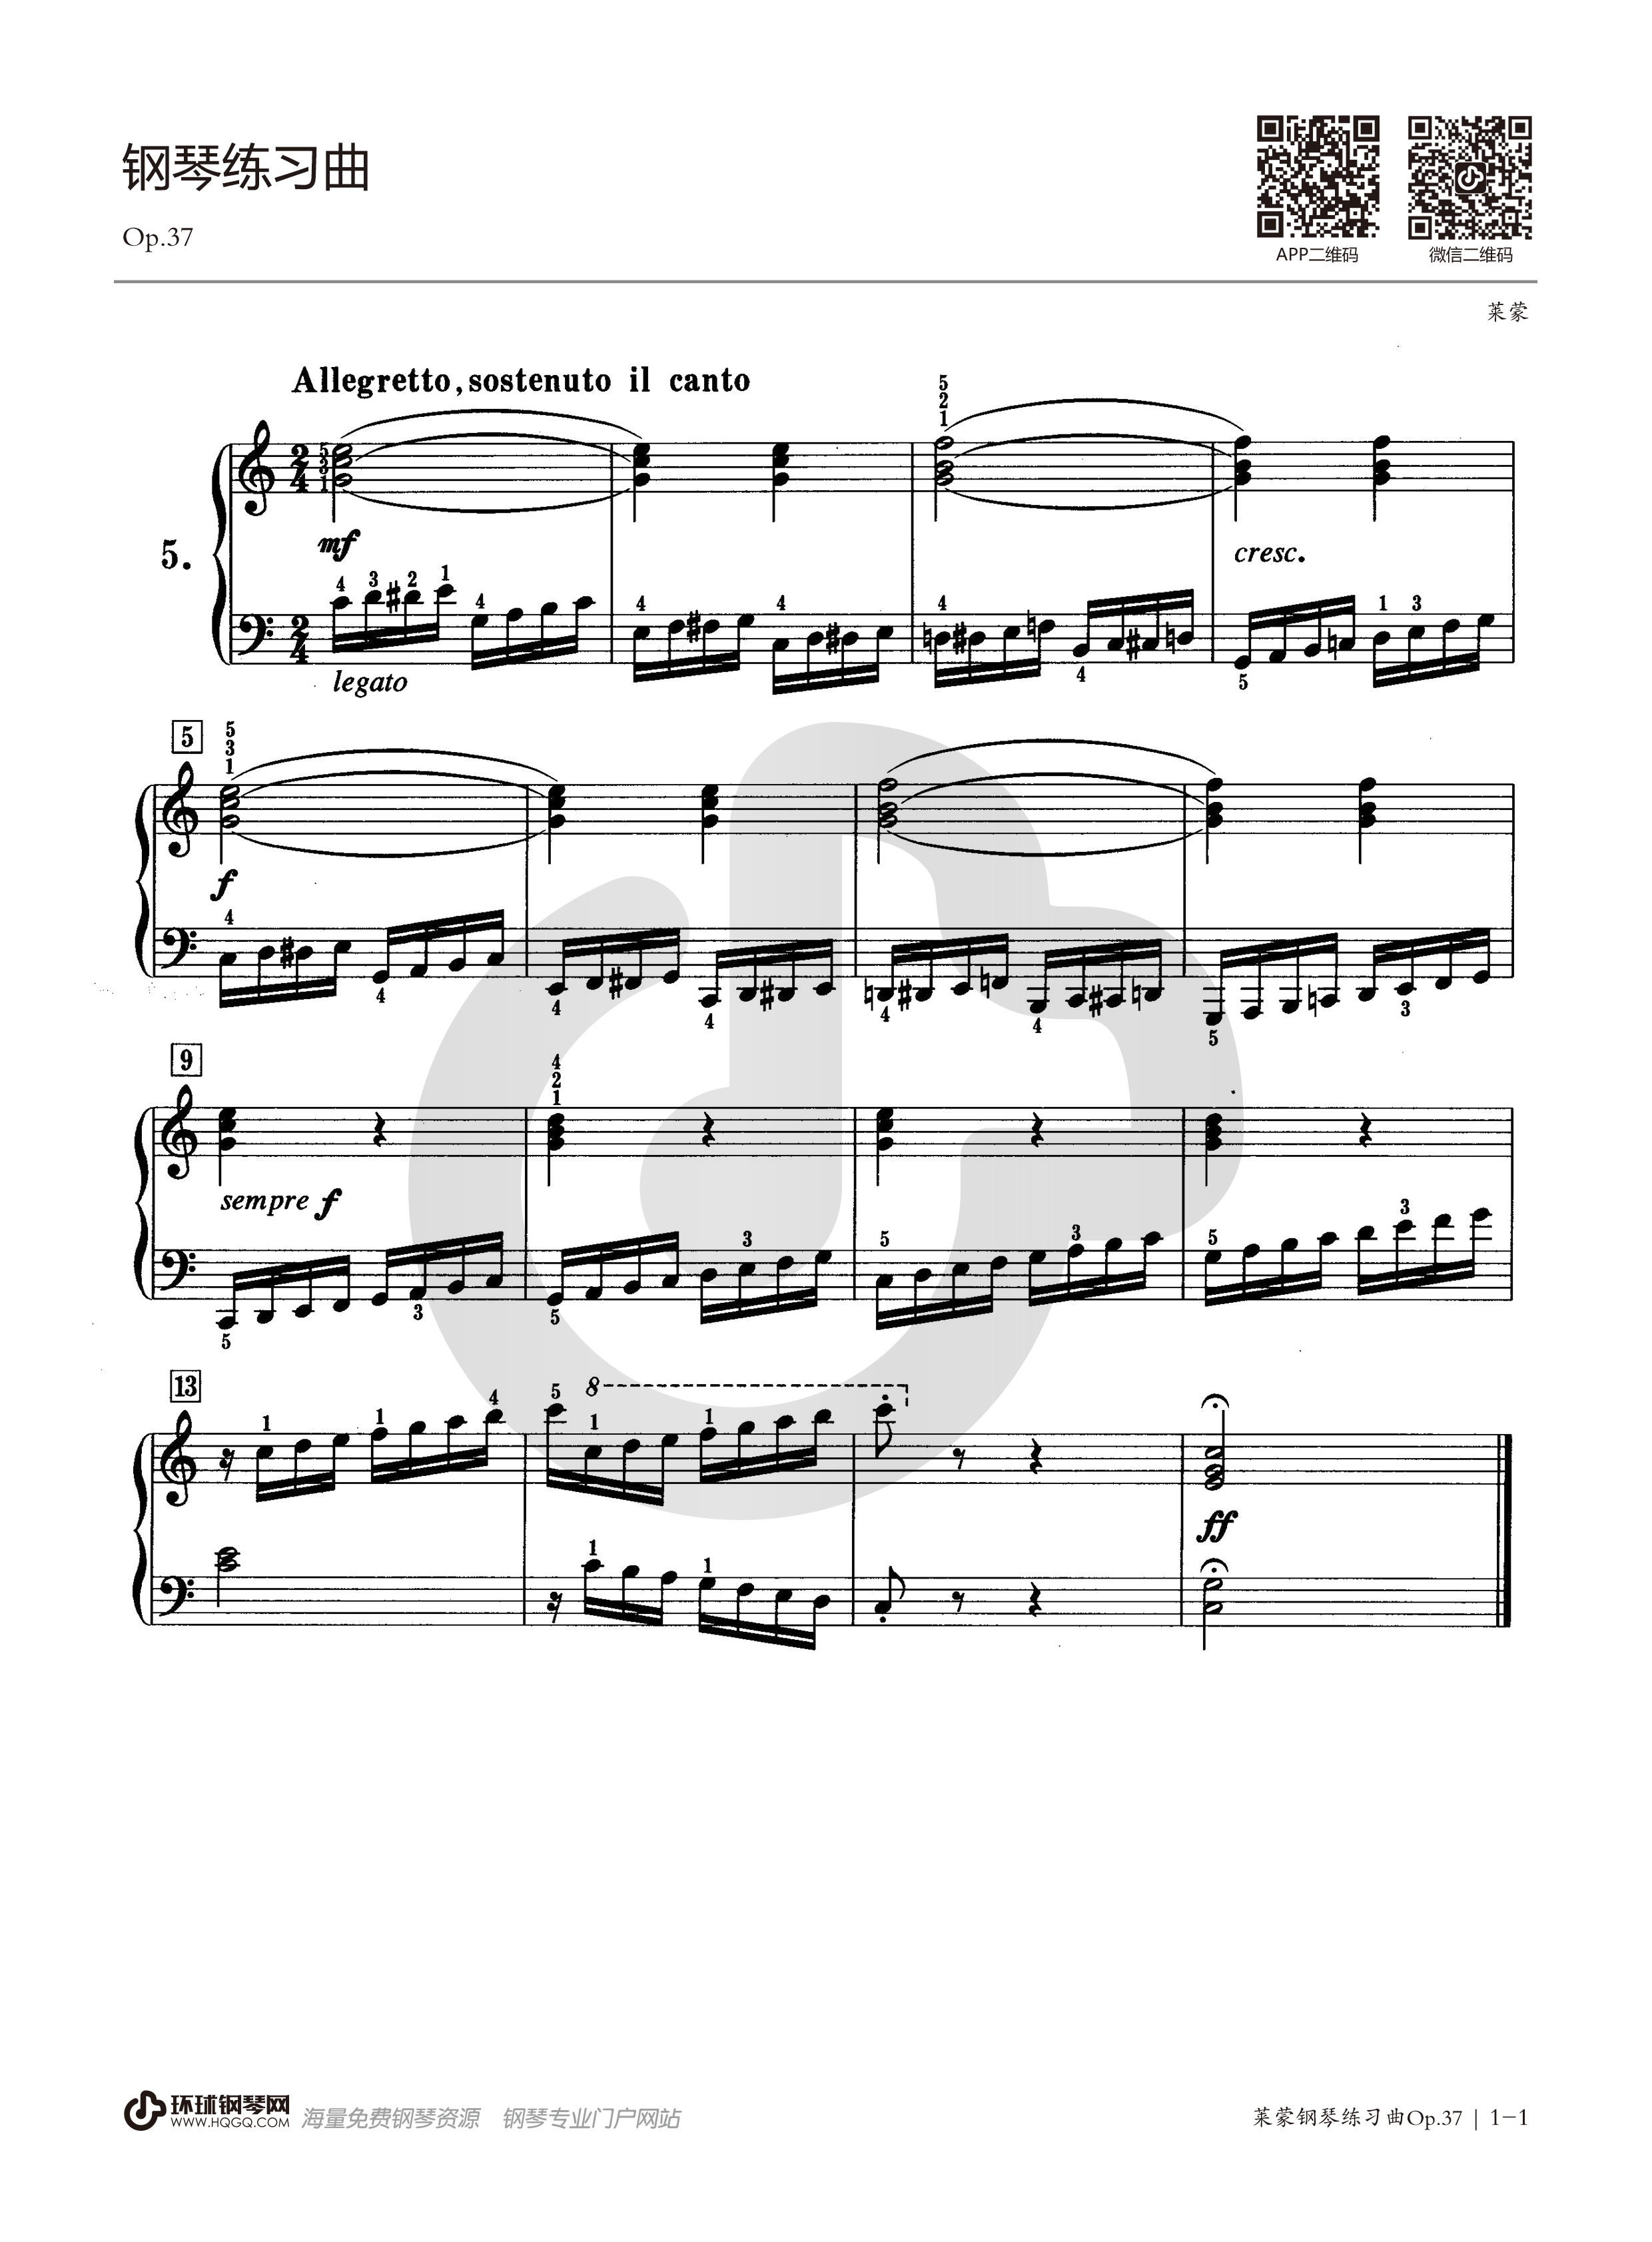 五级钢琴考级曲目莱蒙图片